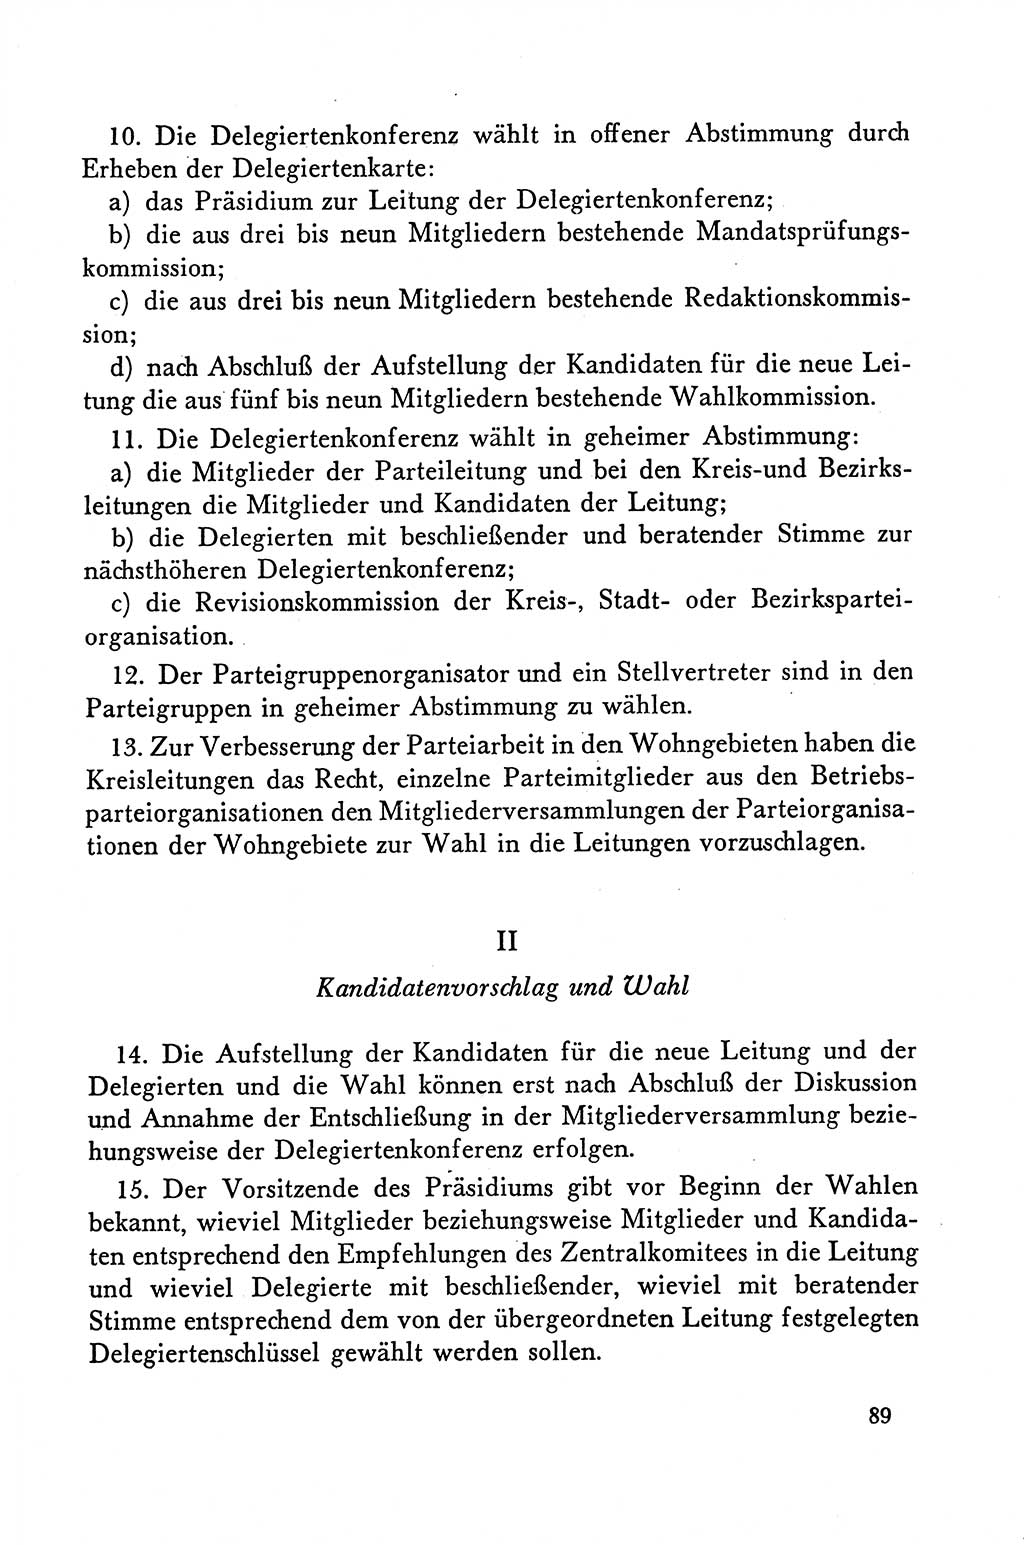 Dokumente der Sozialistischen Einheitspartei Deutschlands (SED) [Deutsche Demokratische Republik (DDR)] 1958-1959, Seite 89 (Dok. SED DDR 1958-1959, S. 89)